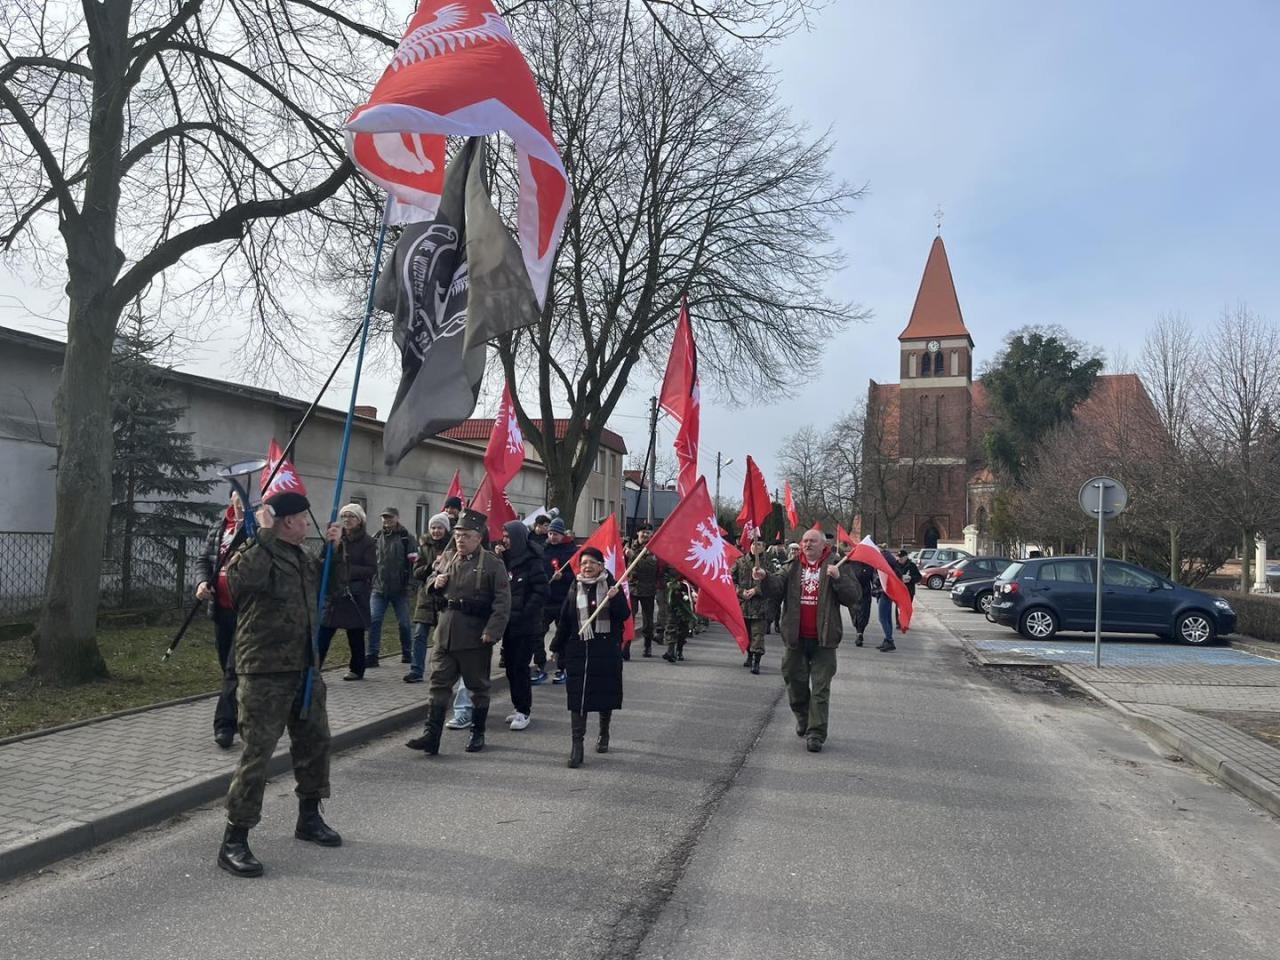 Jedno z wydarzeń organizowanych przez stowarzyszenie | fot. Stowarzyszenie Marszu Powstania Wielkopolskiego